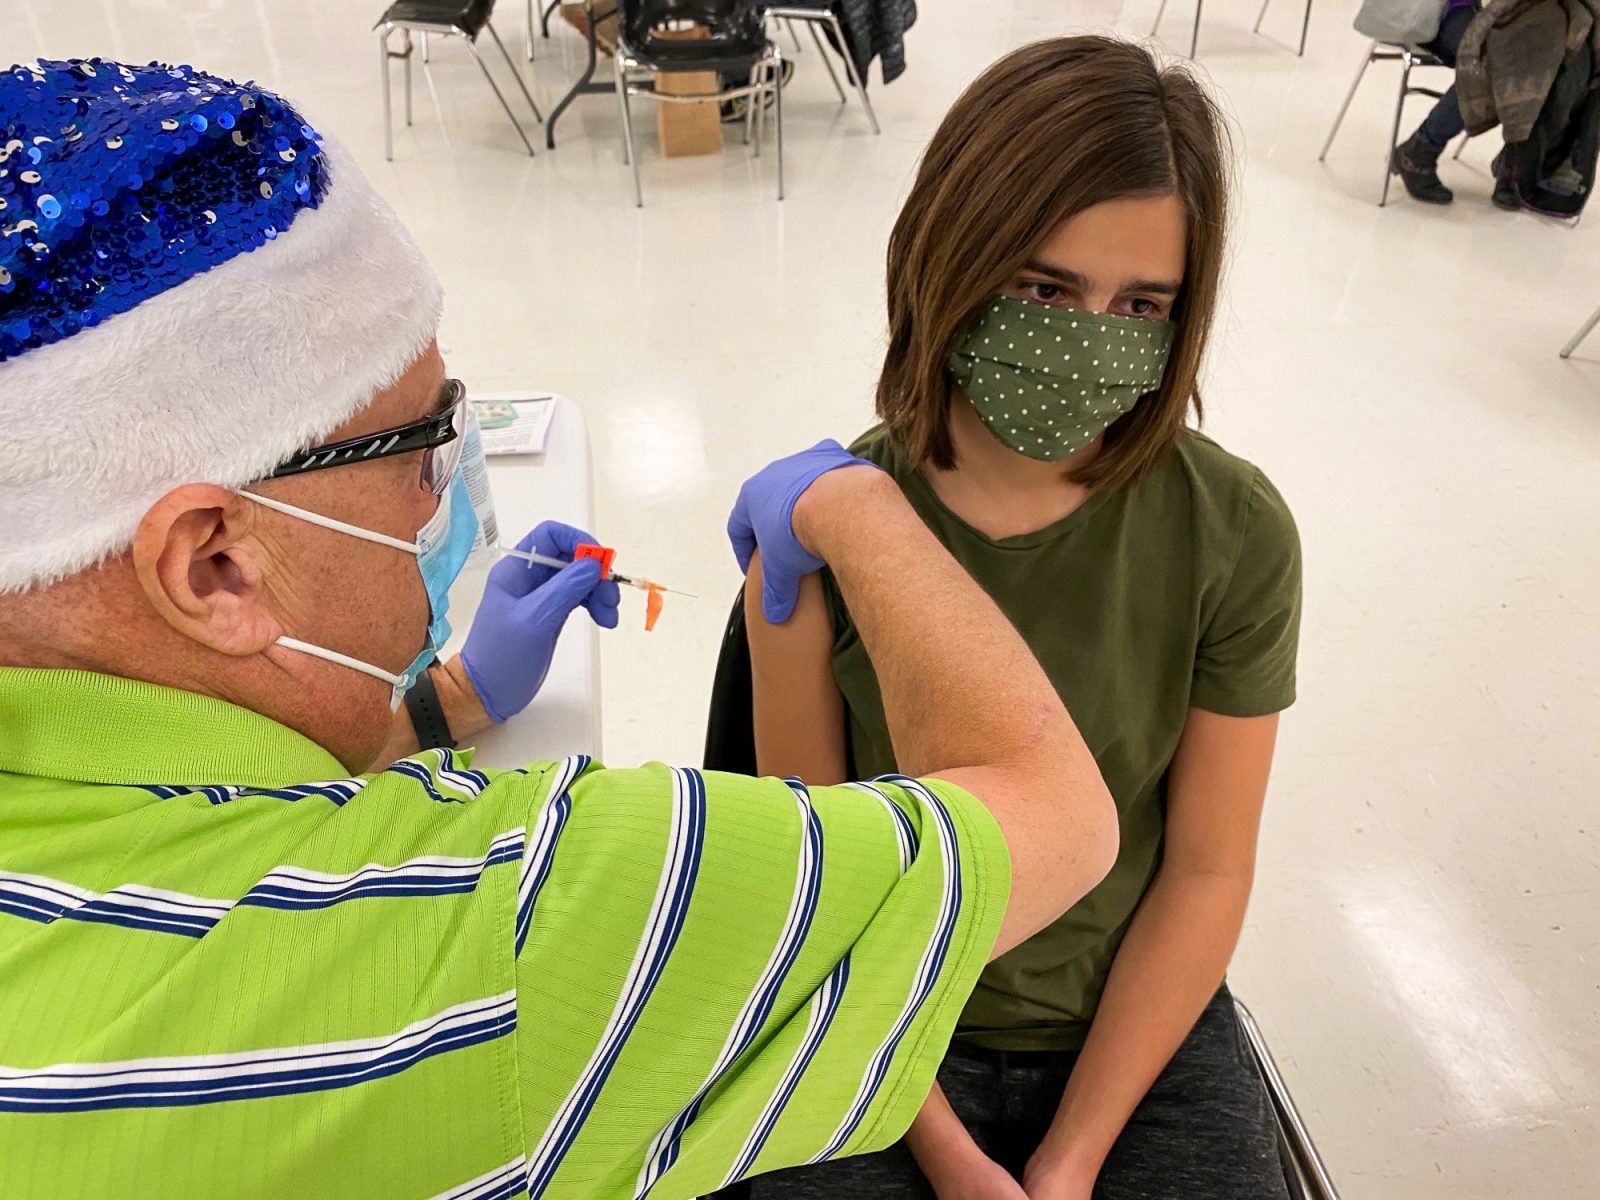 EOHU warns flu hitting young children hard